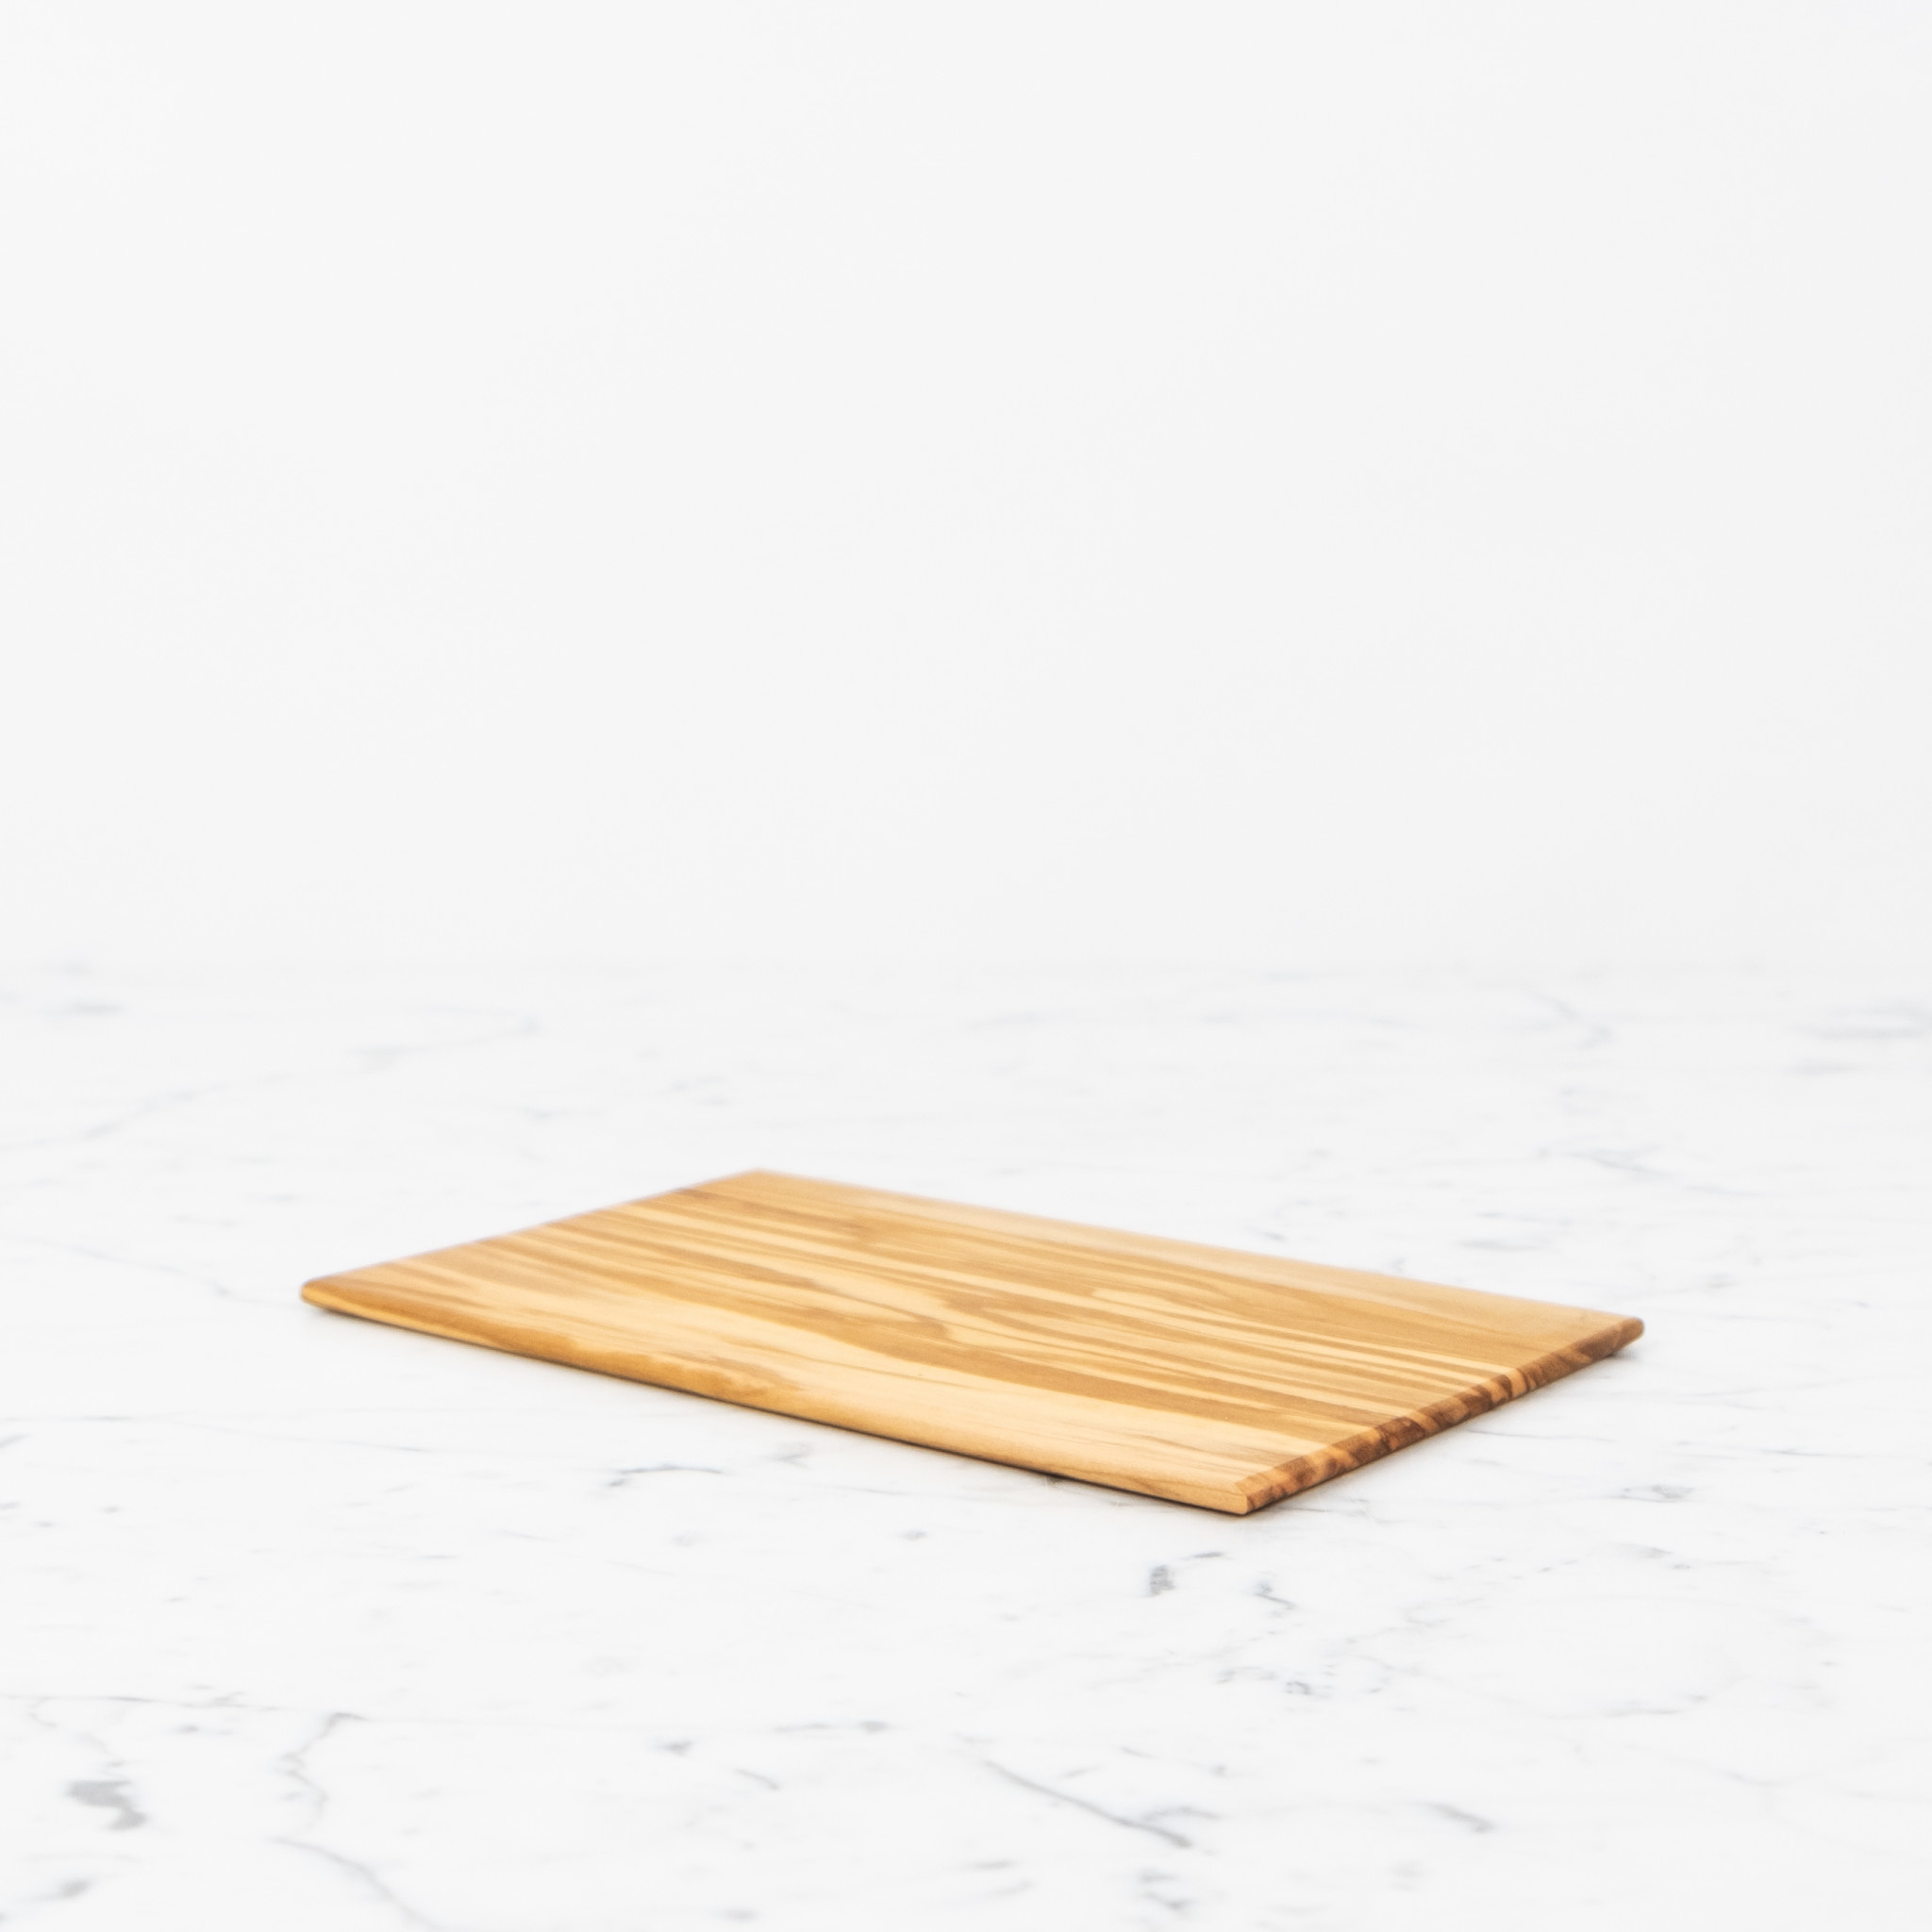 Olivewood Thin Herb Cutting Board - 8.75 x 5.25"